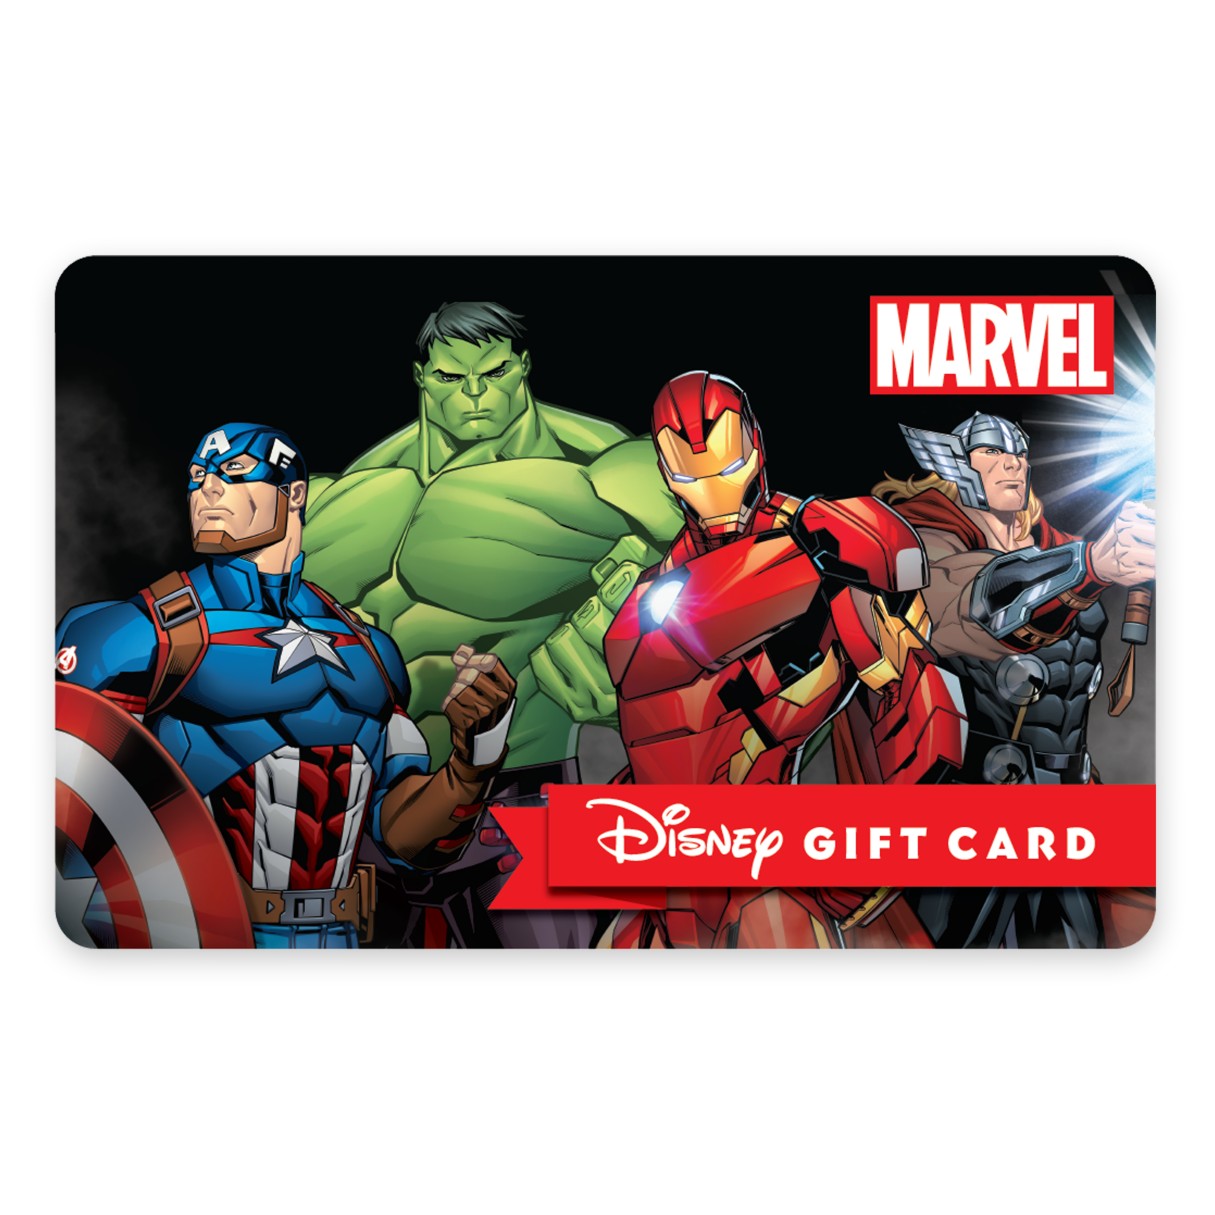 Marvel Avengers Disney Gift Card eGift | shopDisney